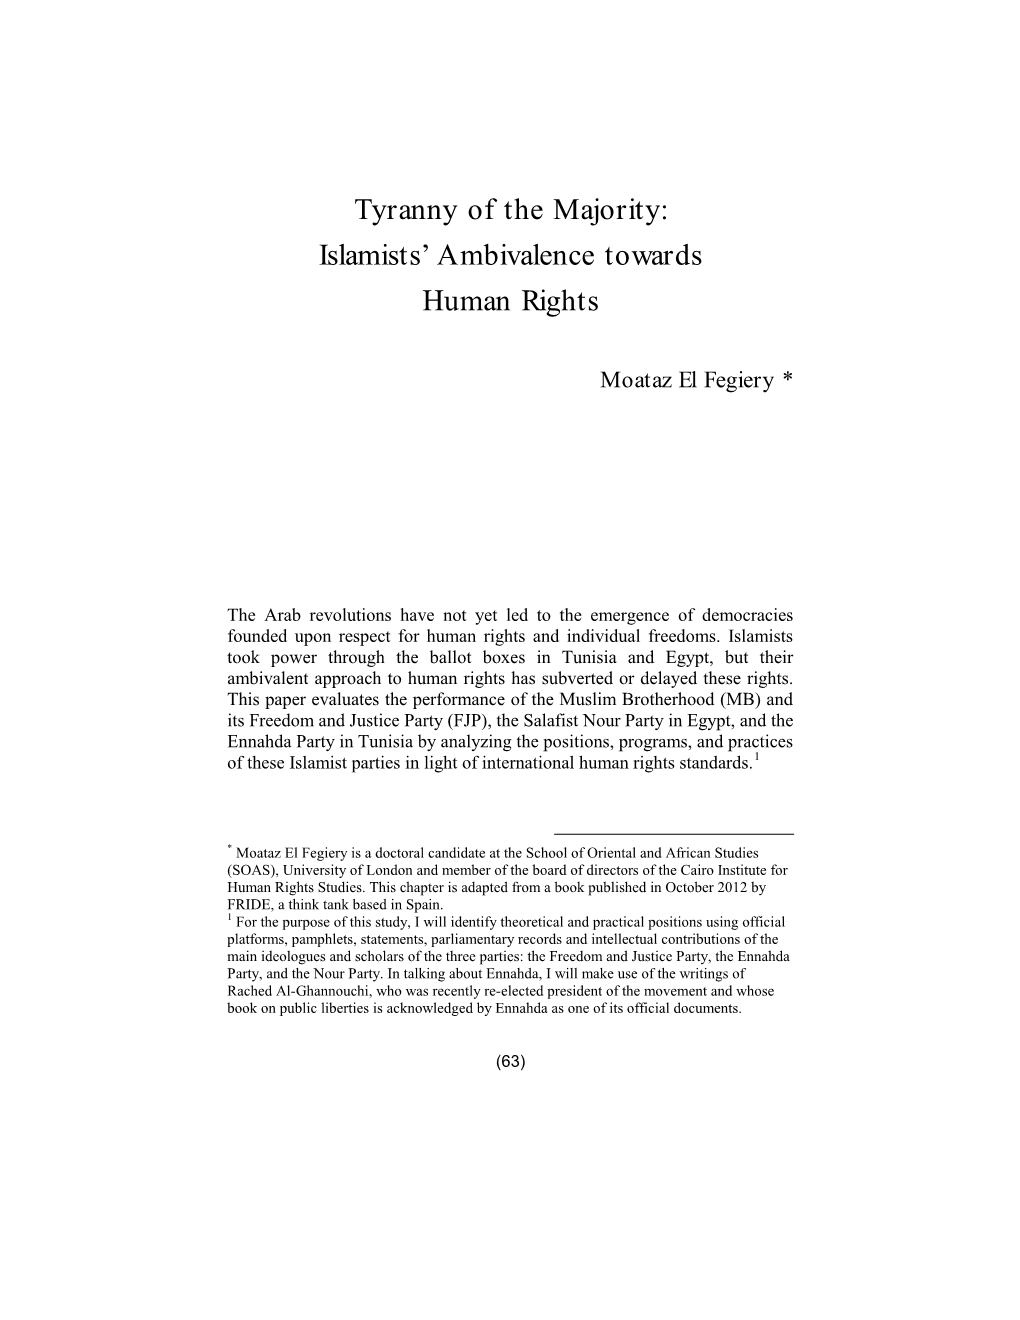 Tyranny of the Majority: Islamists' Ambivalence Towards Human Rights